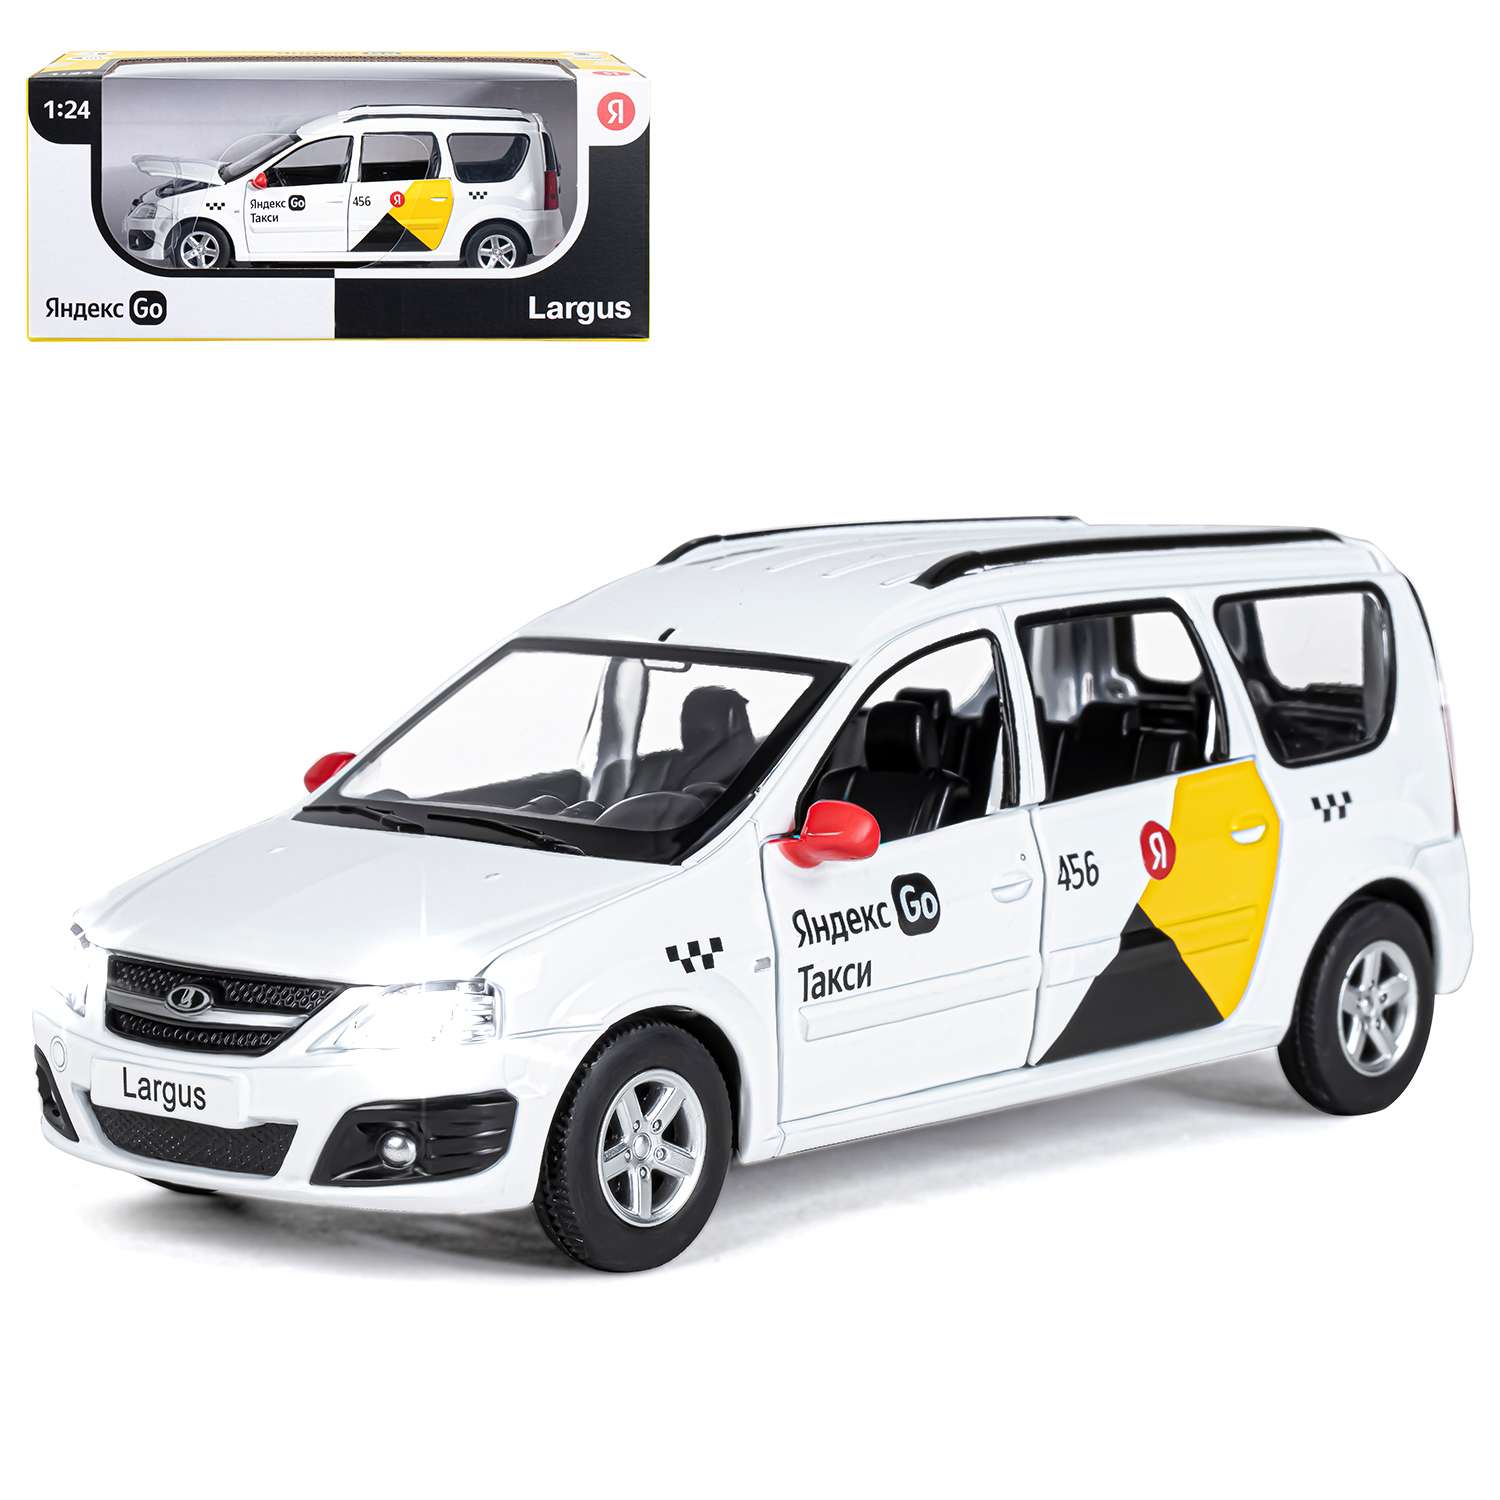 Машинка металлическая Яндекс GO игрушка детская LADA LARGUS 1:24 белый Озвучено Алисой JB1251343/Яндекс GO - фото 10